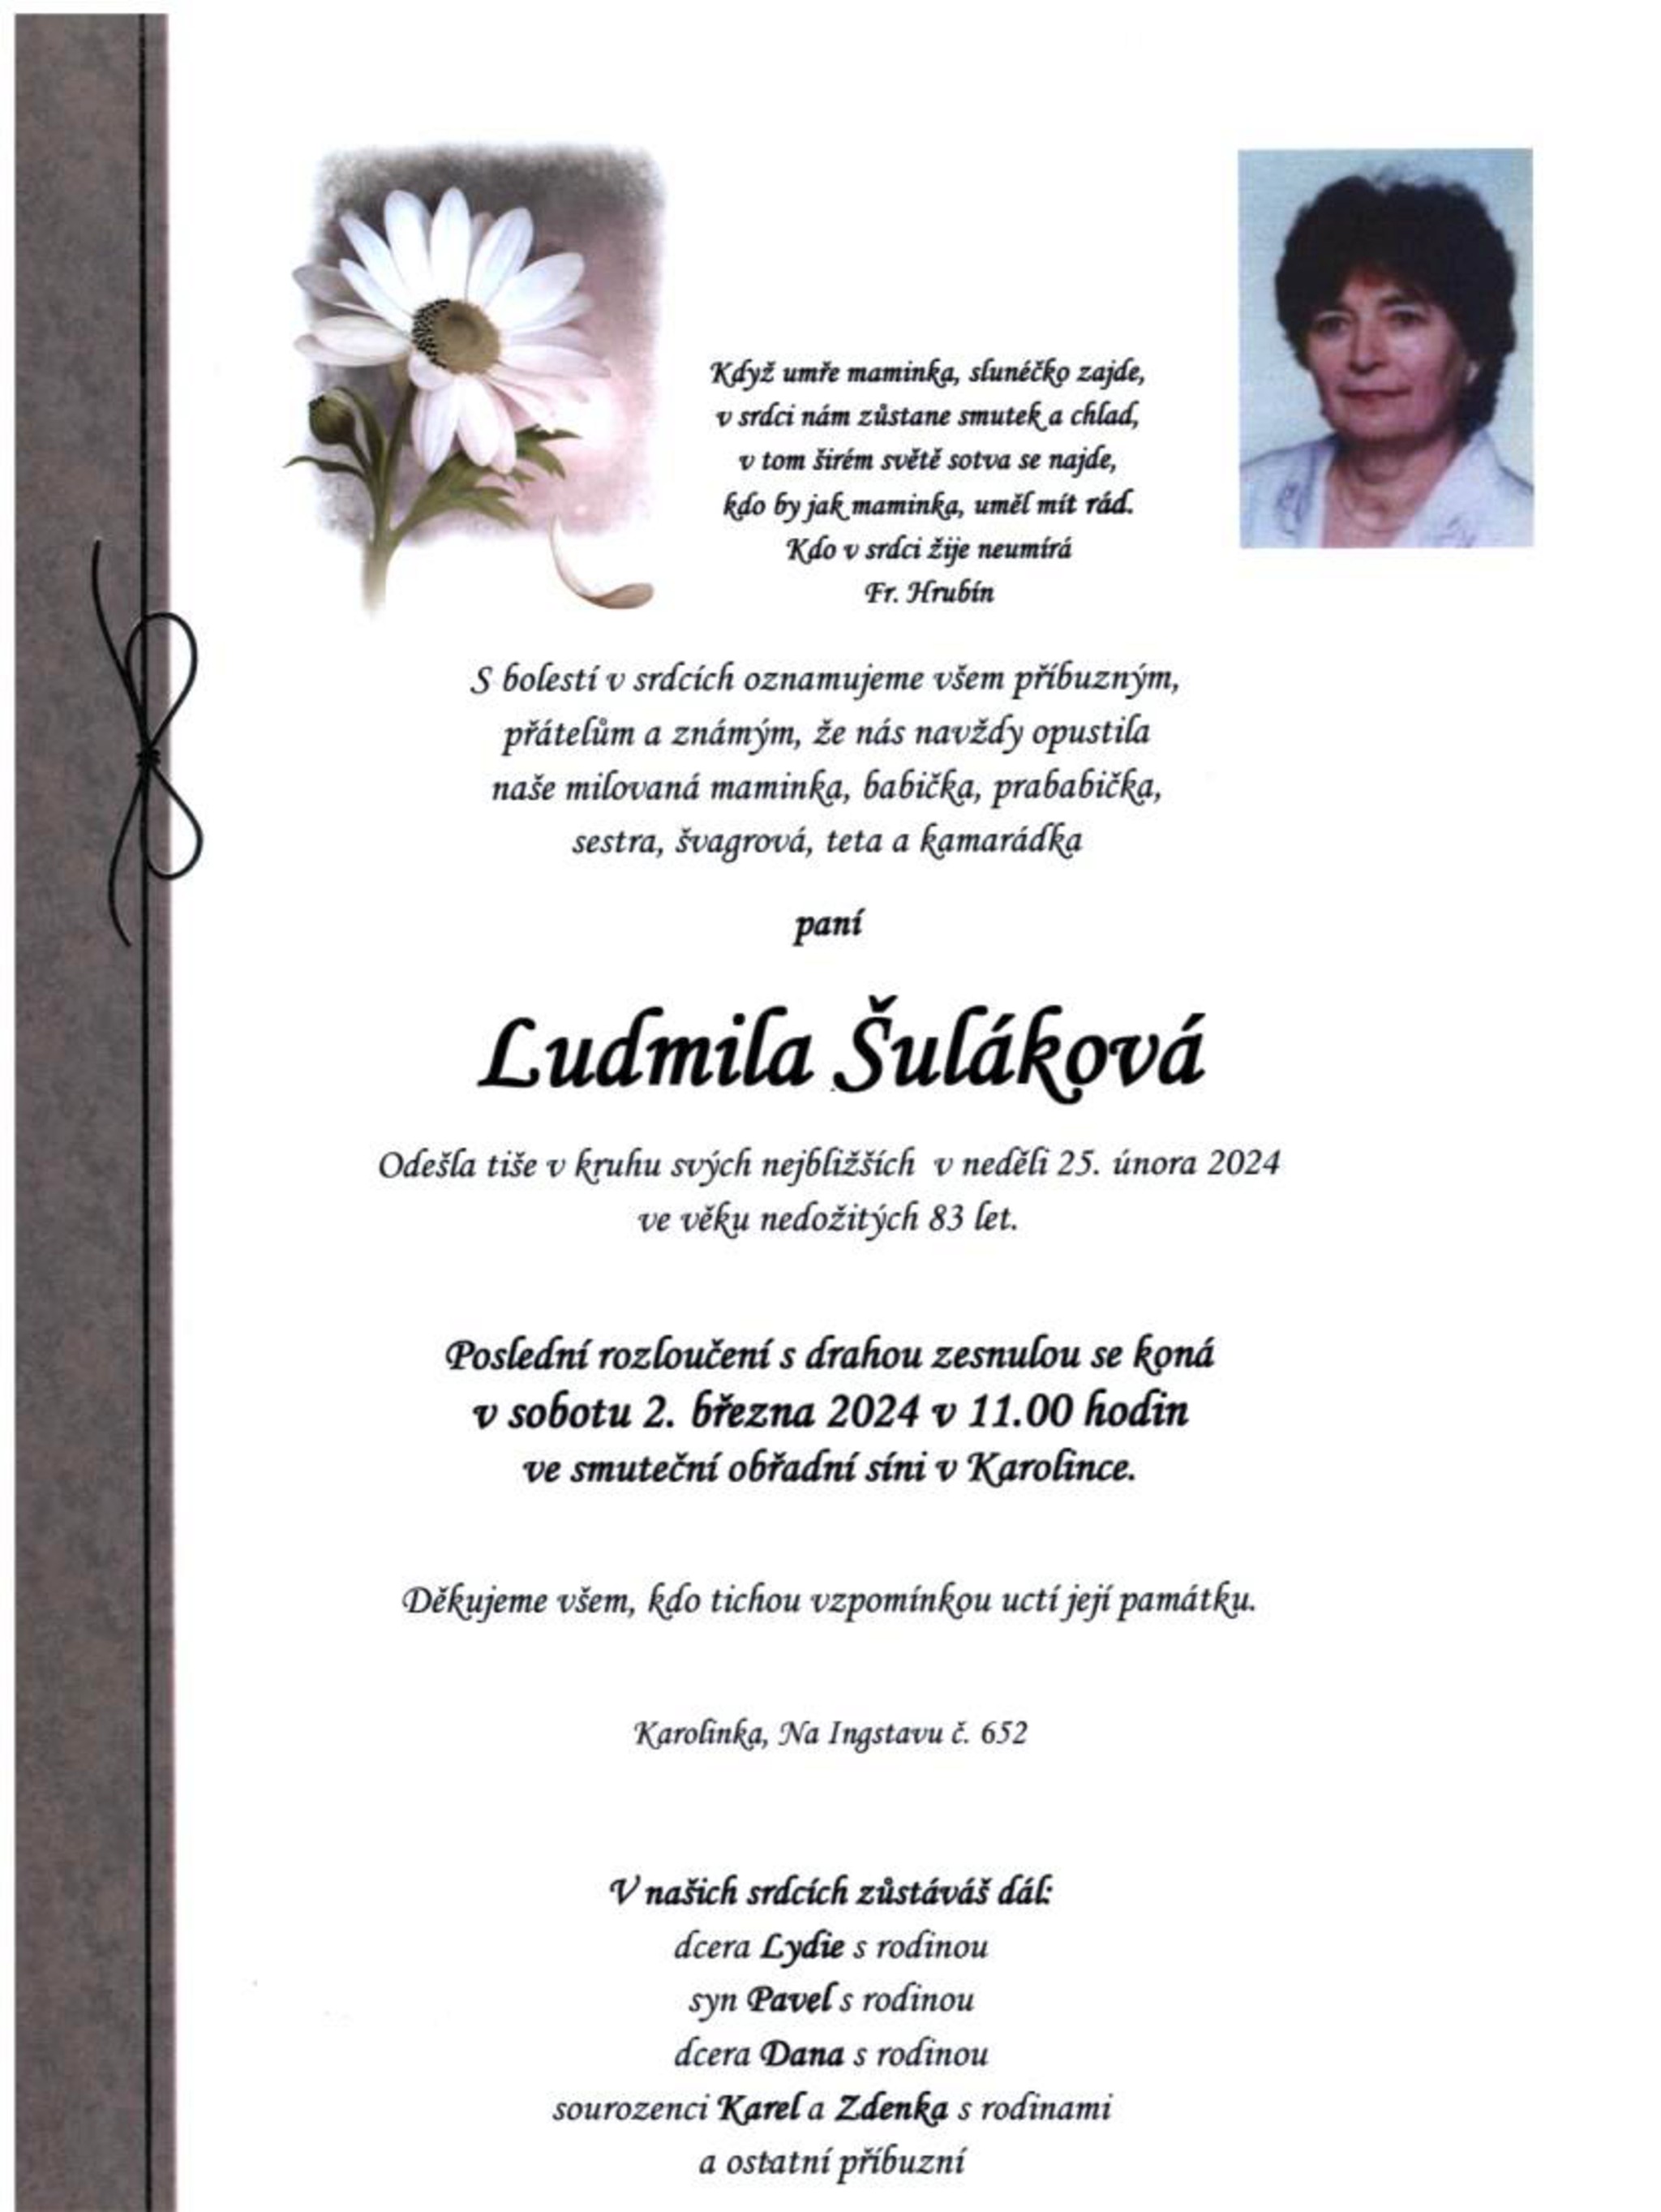 Ludmila Šuláková